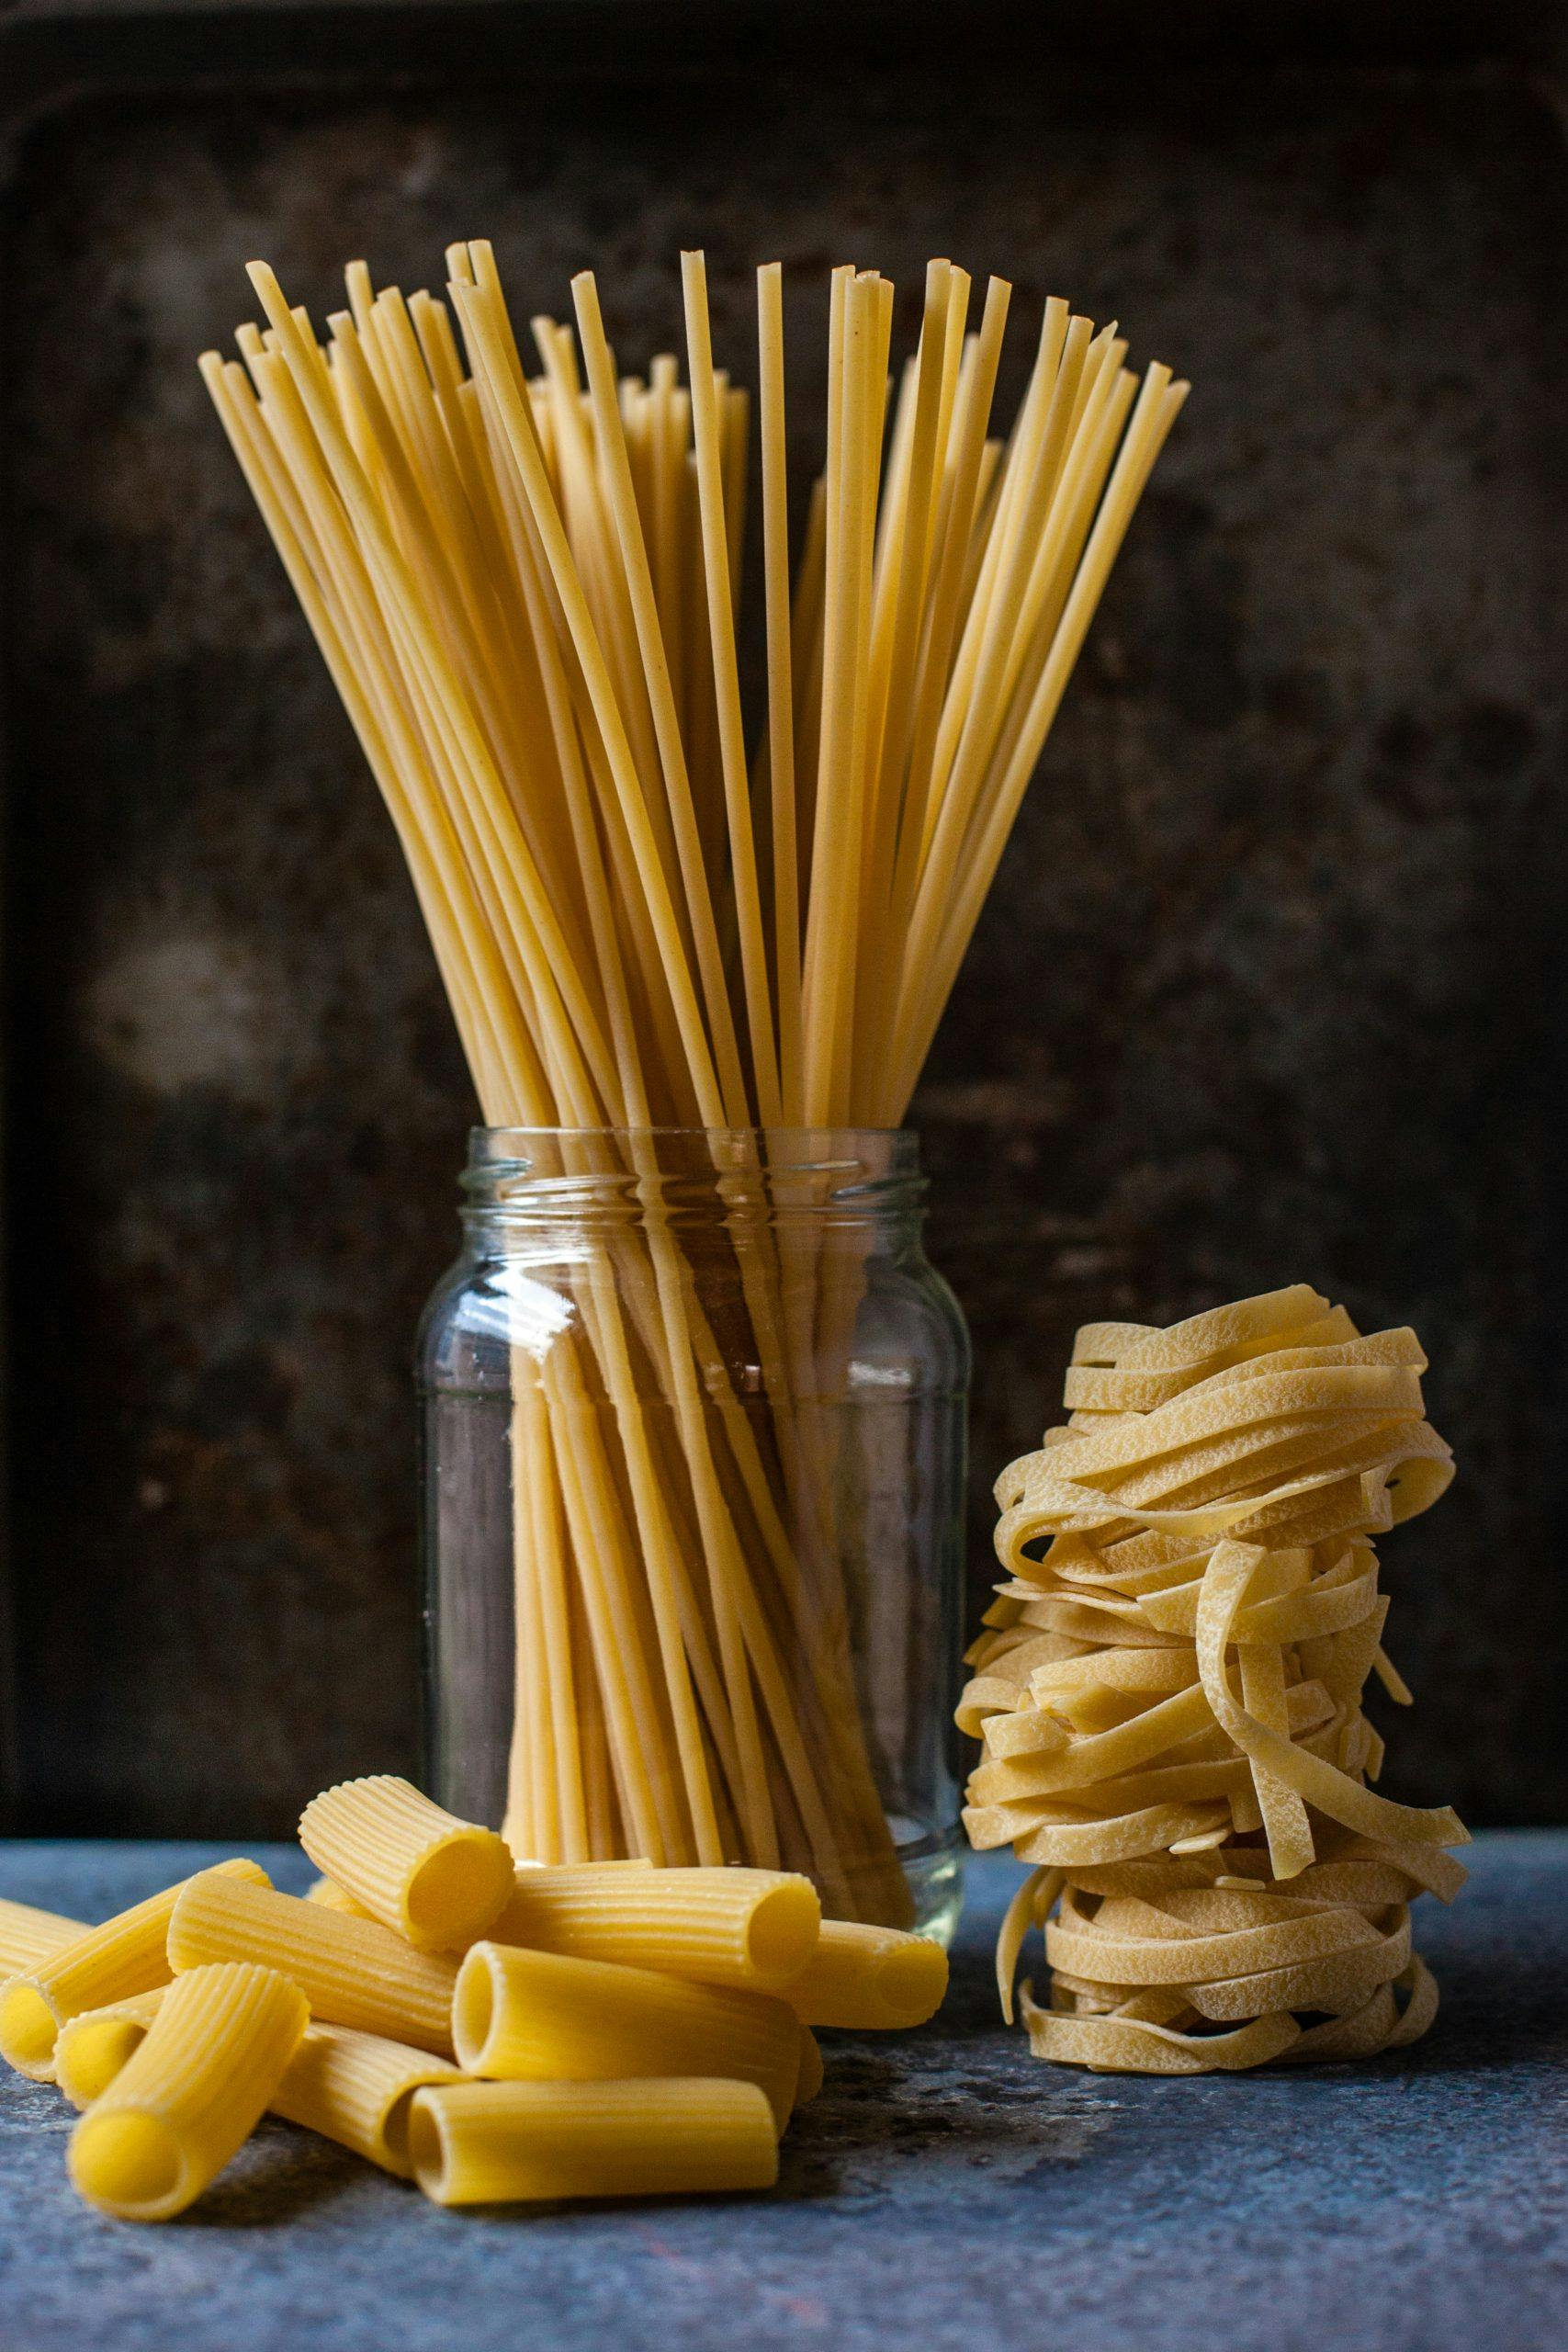 På världspastadagen äts pasta – basta!